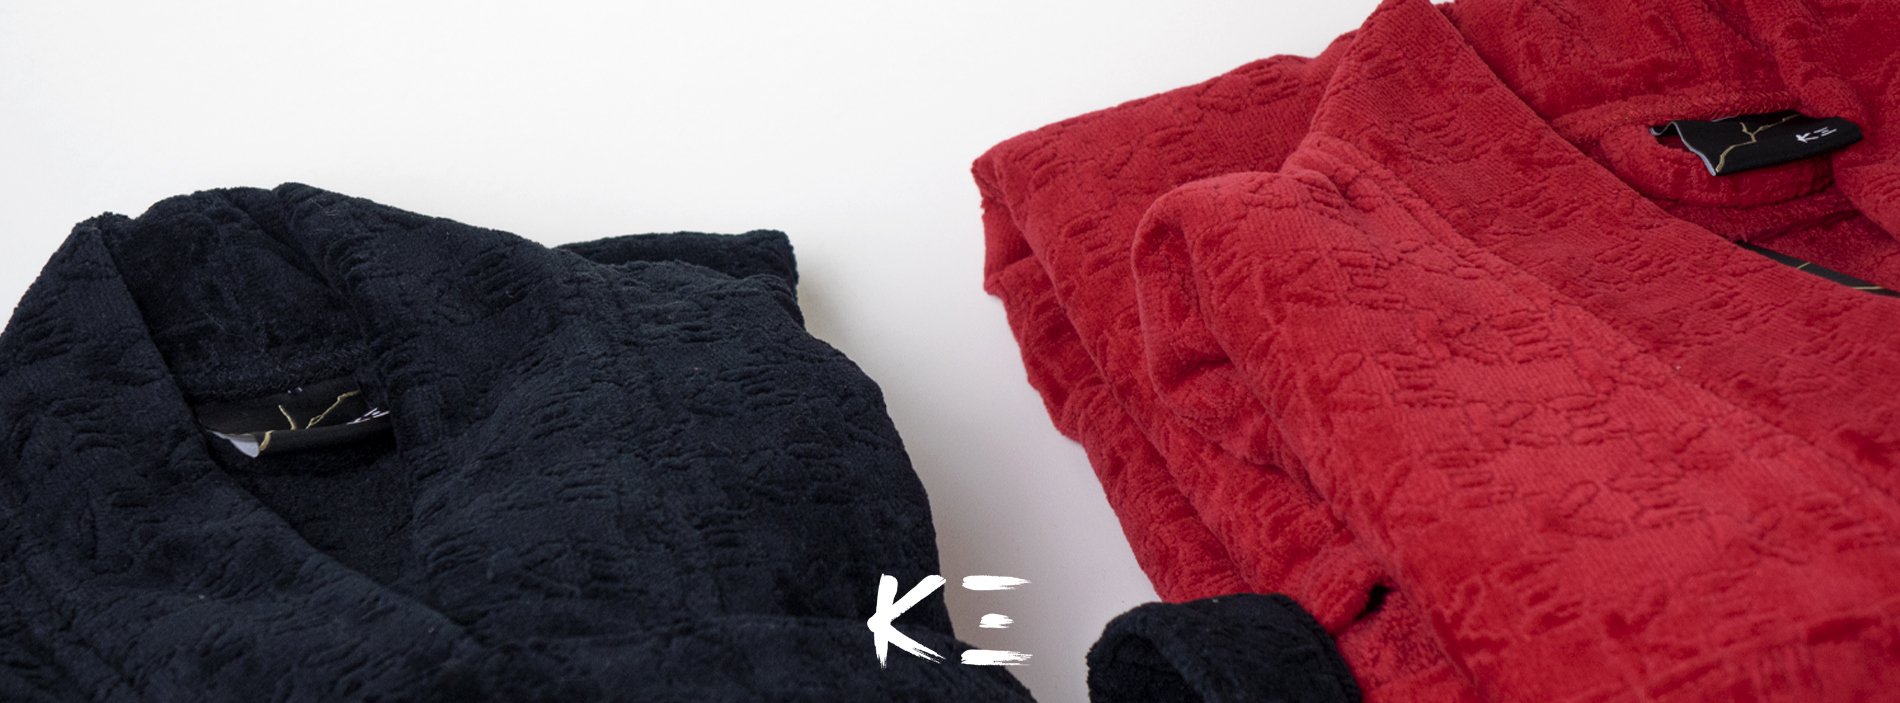  K-3 Kenzo Takada towels